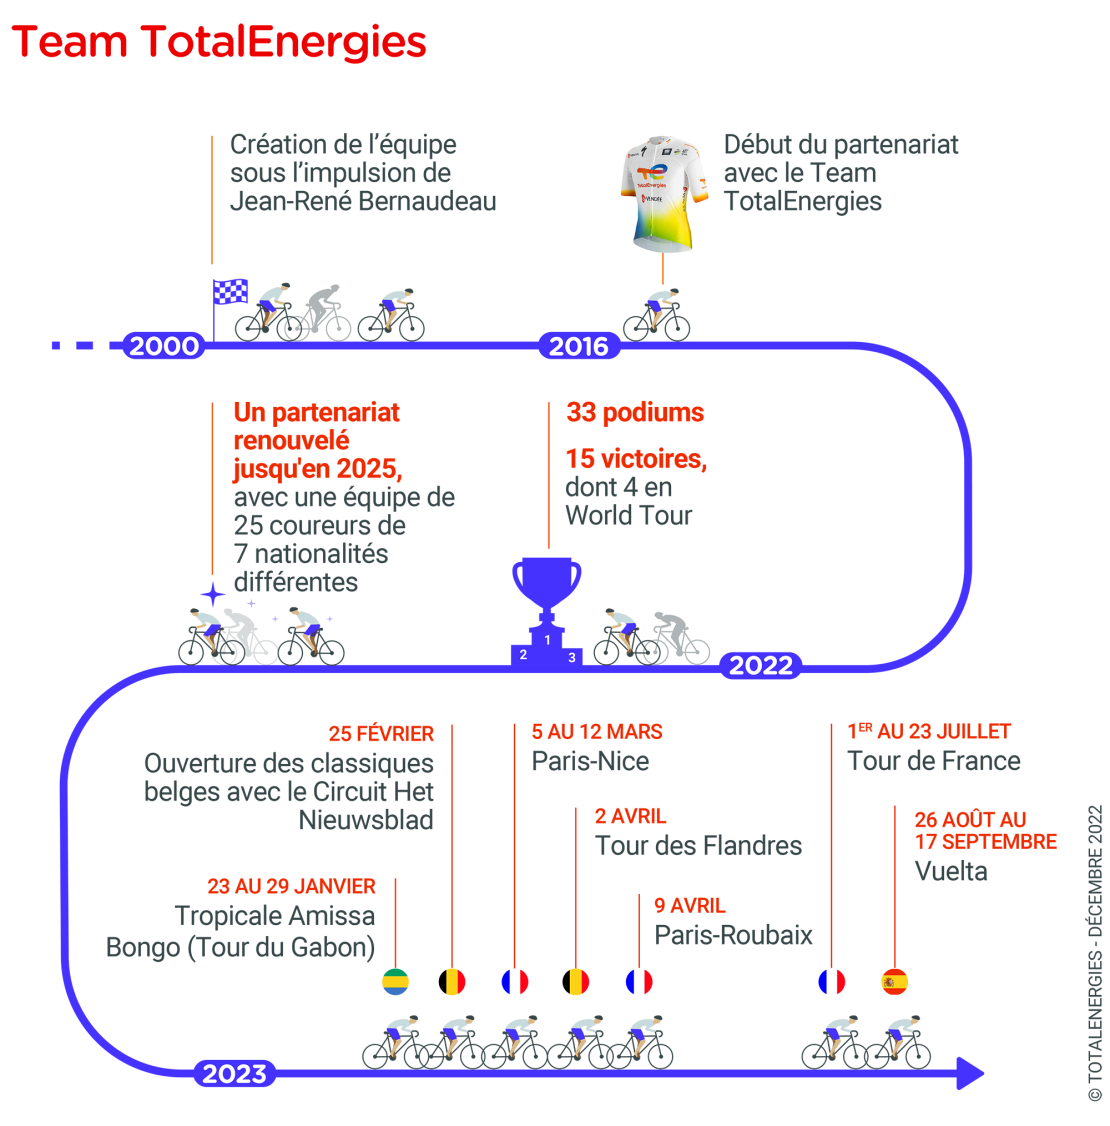 infographie "Team TotalEnergies" - voir description détaillée ci-dessus